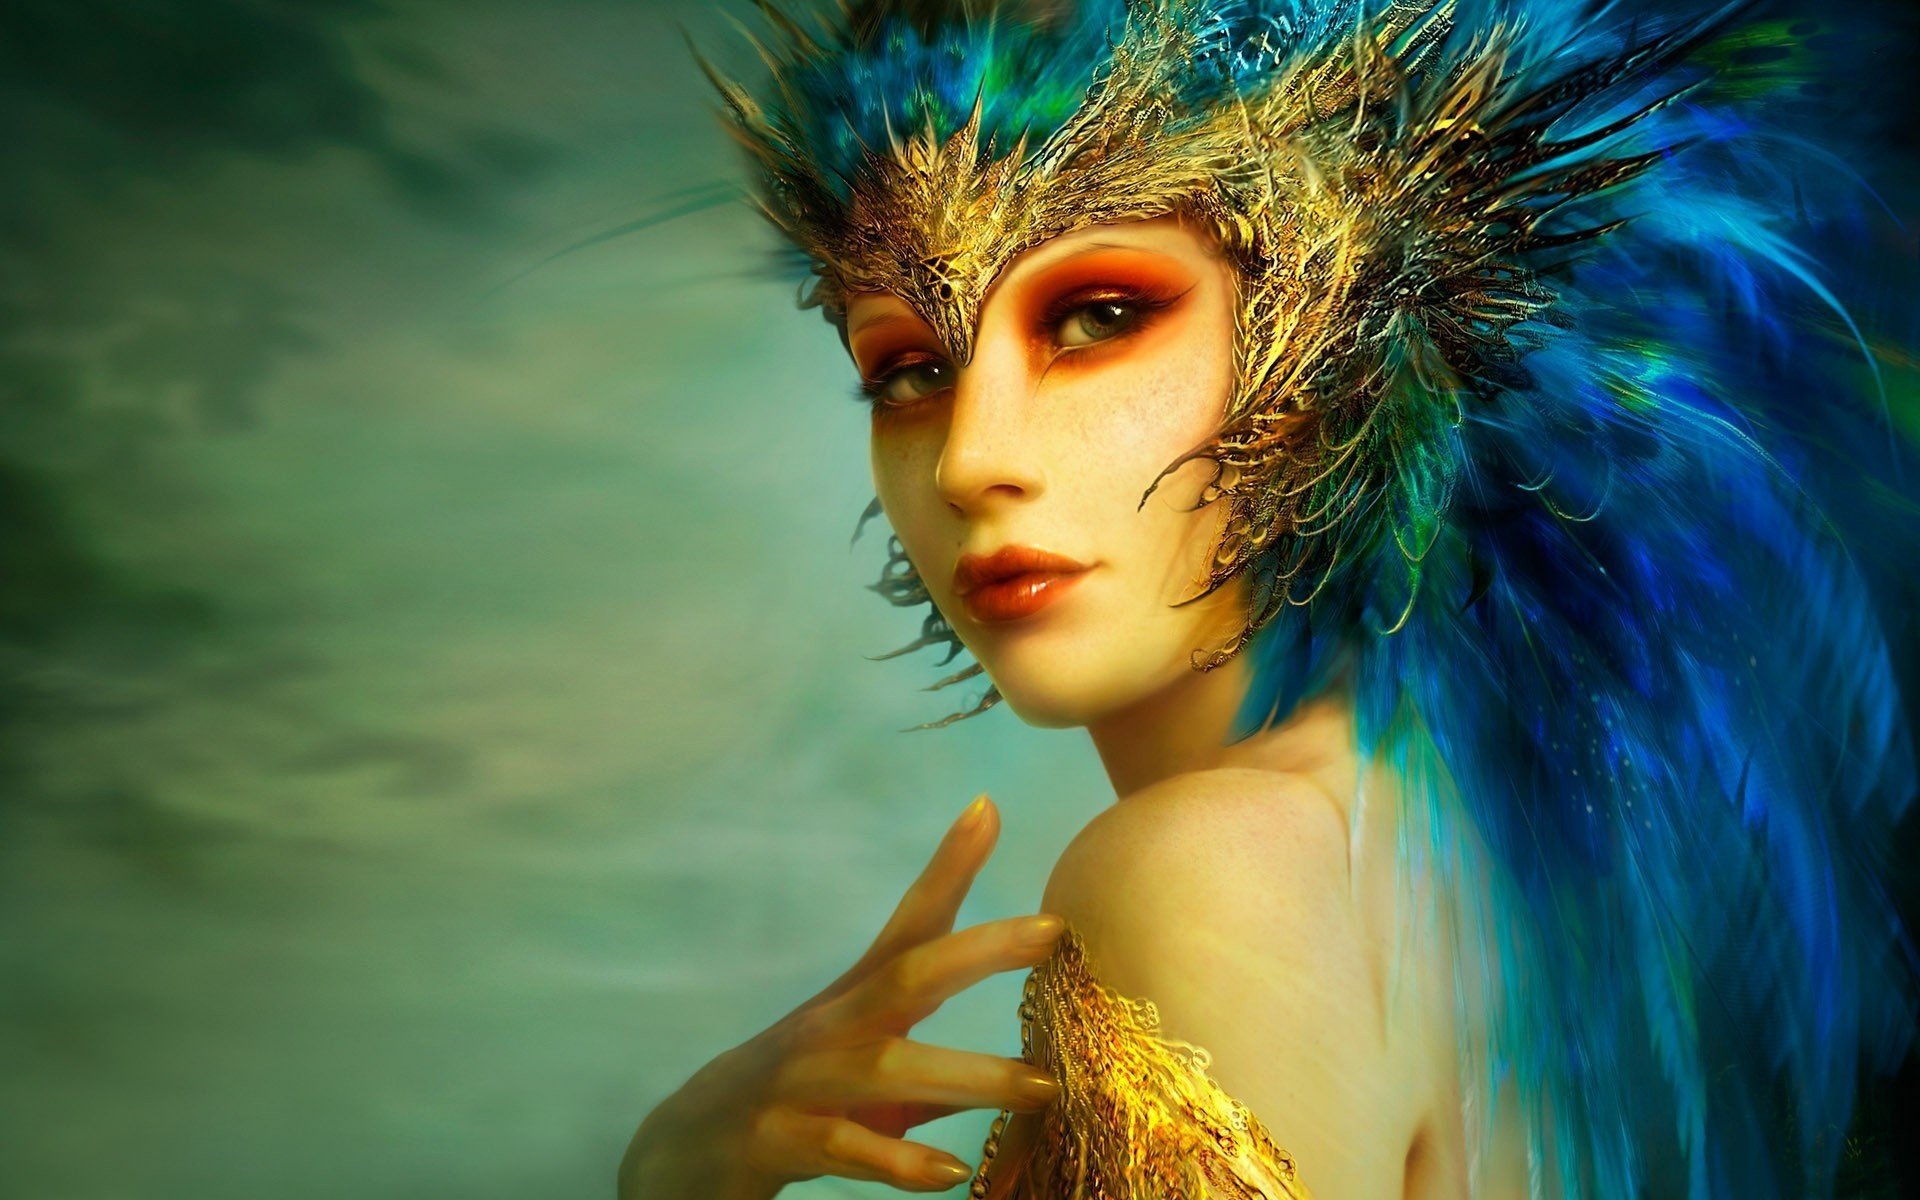 Портрет девушки с синими перьями на голове